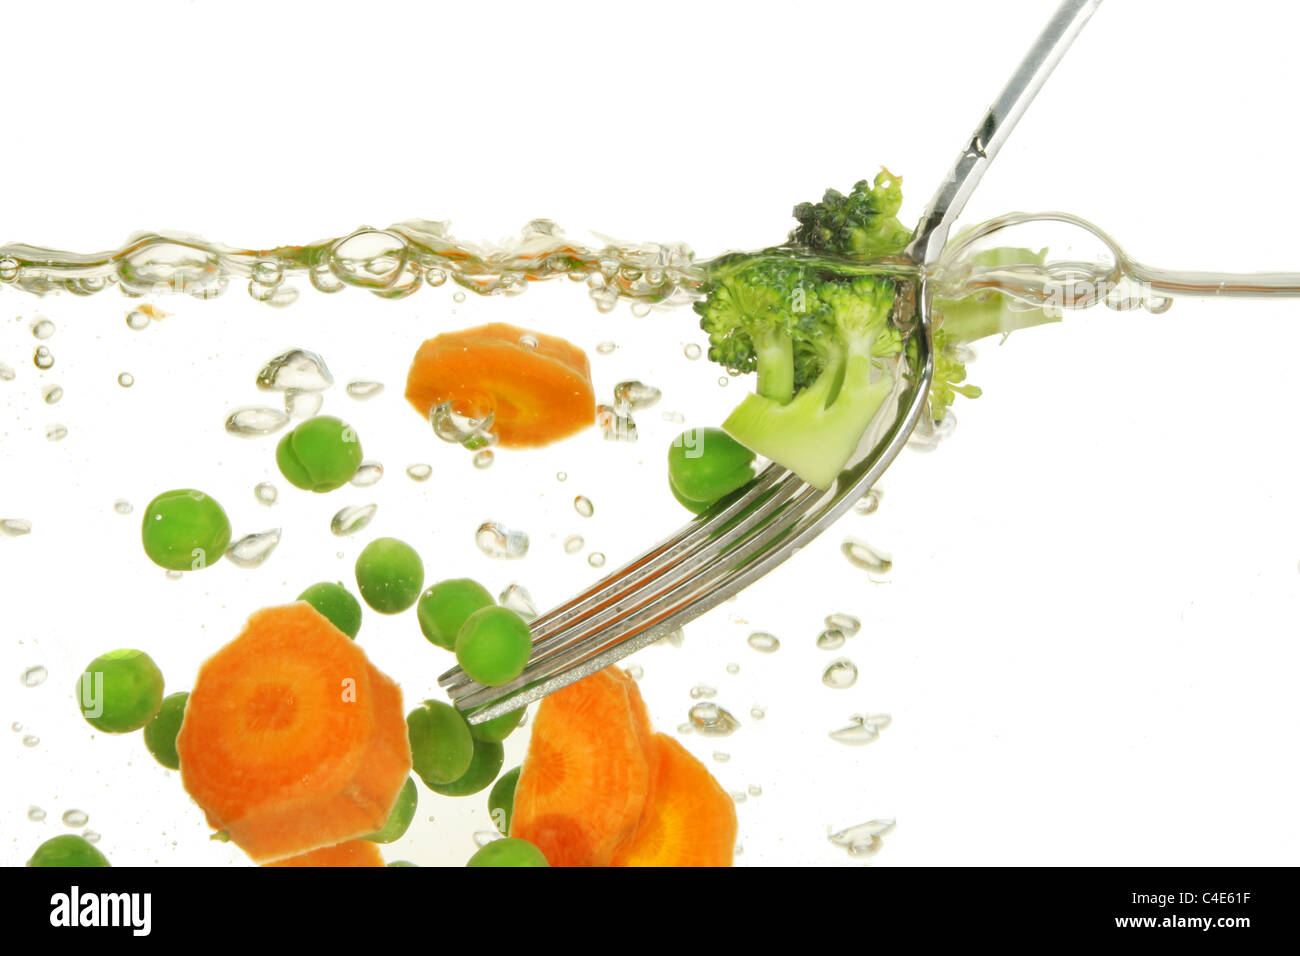 Les carottes, les pois et les légumes brocolli cuisson dans l'eau bouillante avec une fourche en acier inoxydable Banque D'Images